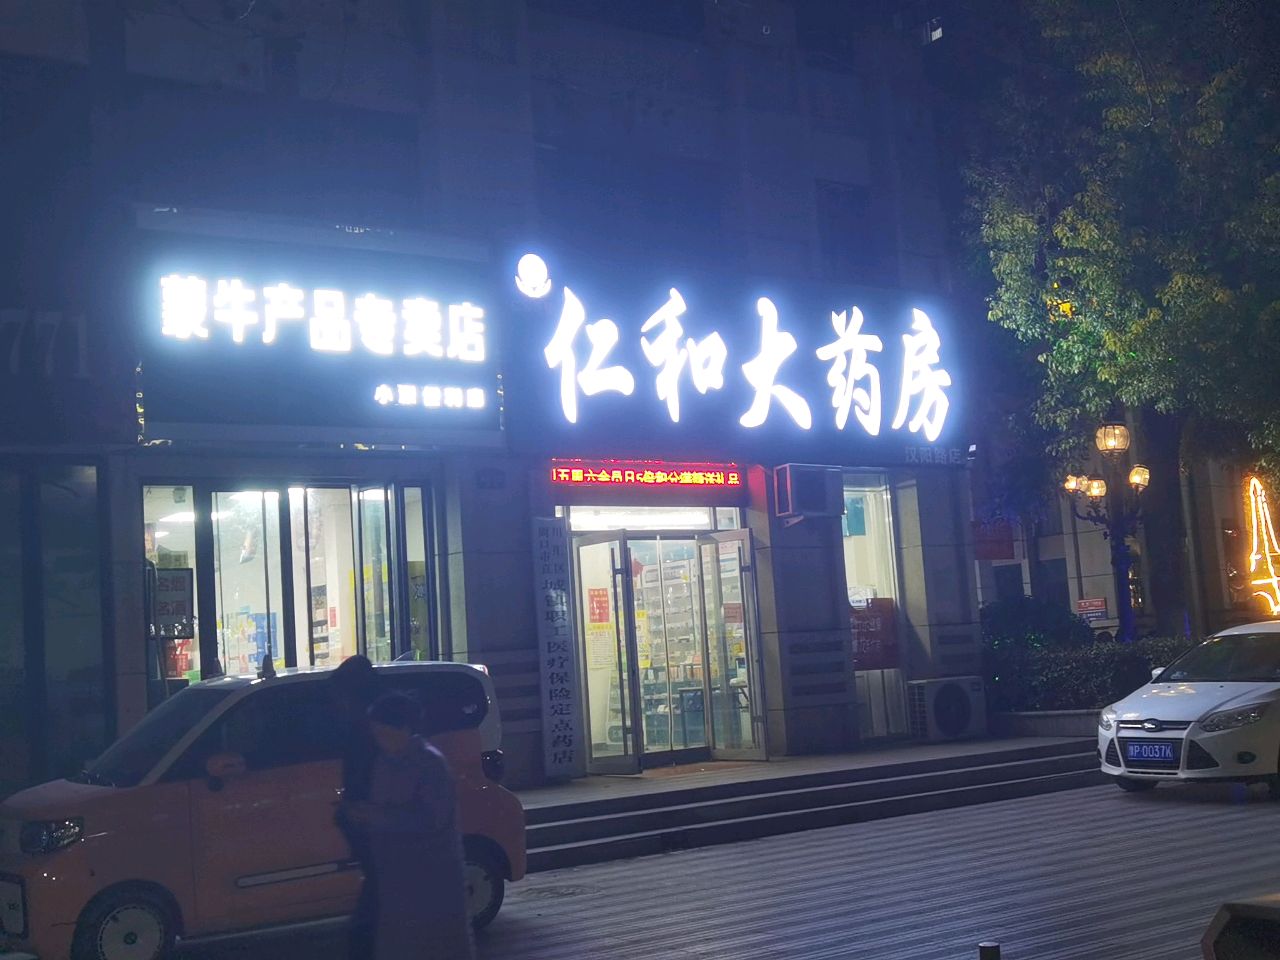 蒙牛产品专卖店(汉阳南路店)